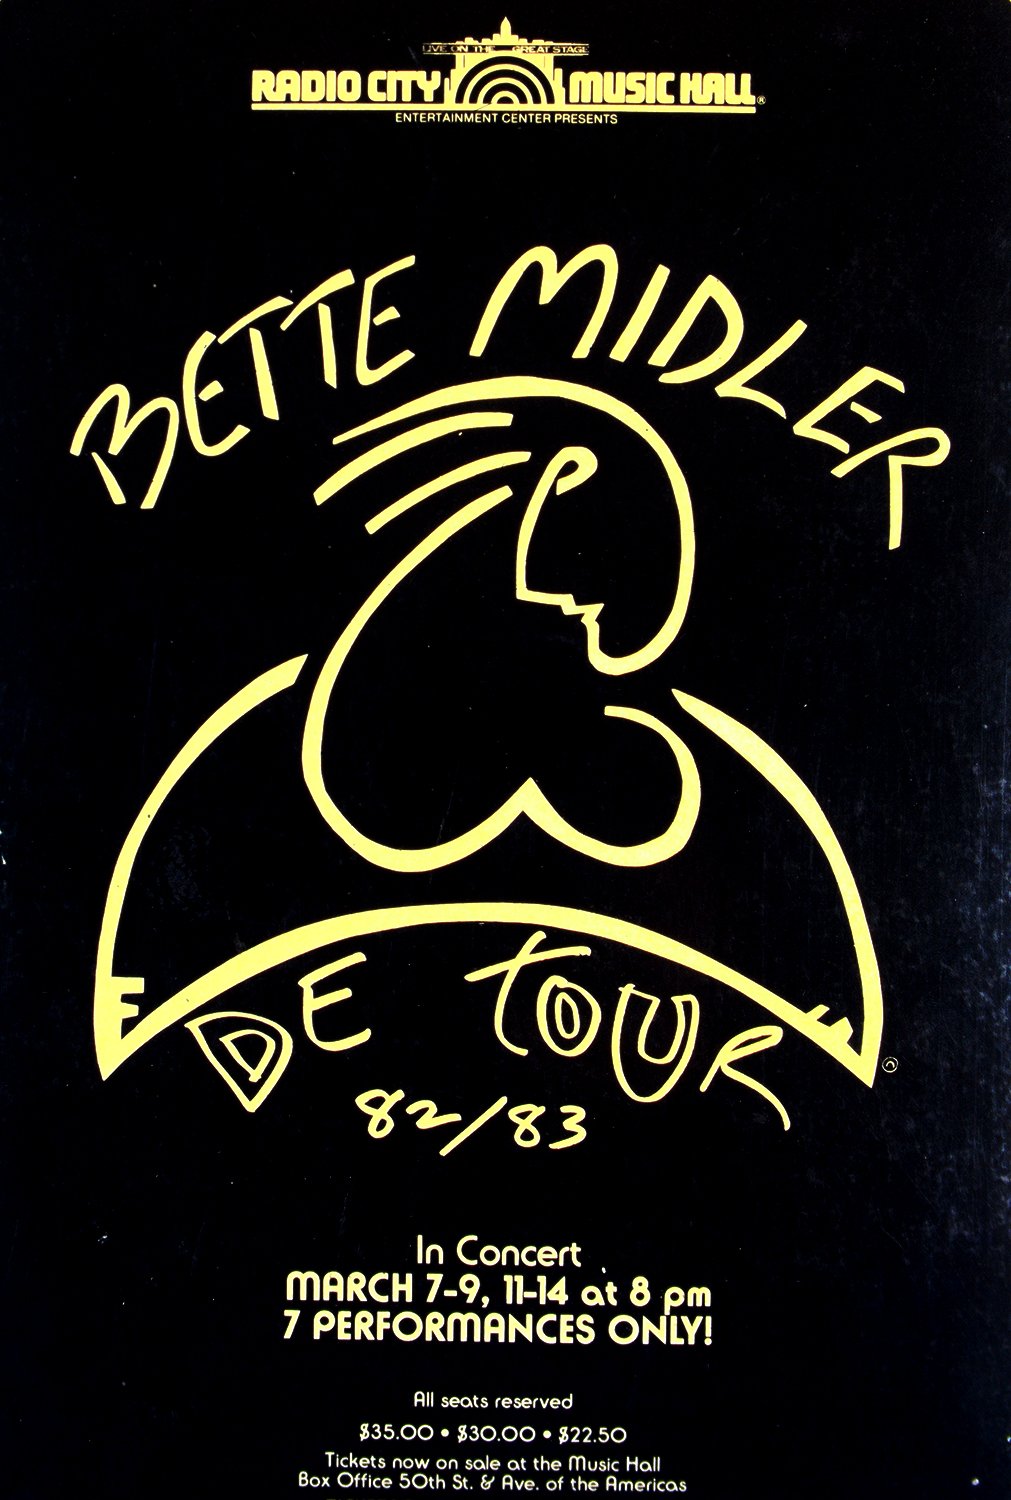 Bette Midler 1982/83